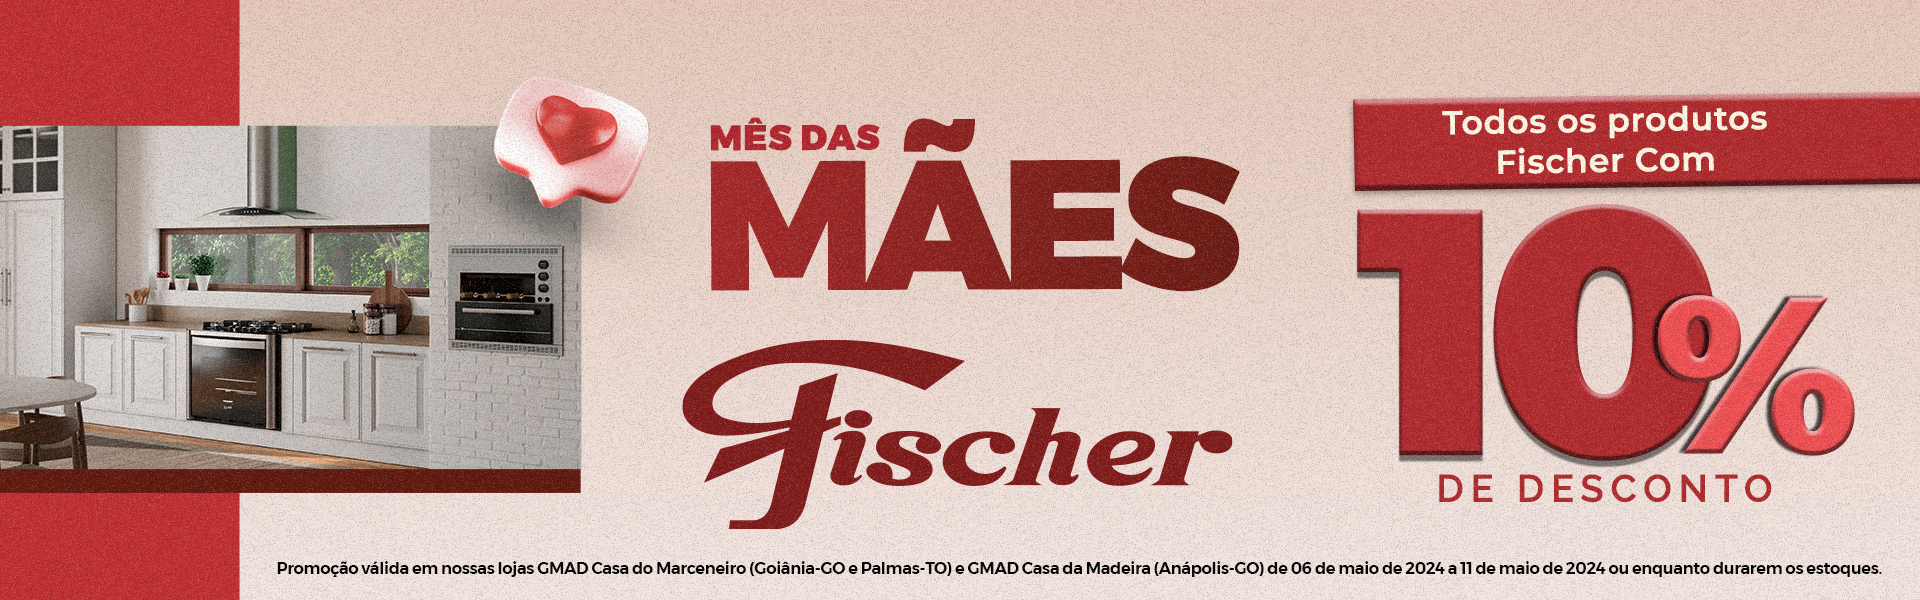 Banner - DIA DAS MÃES FISCHER